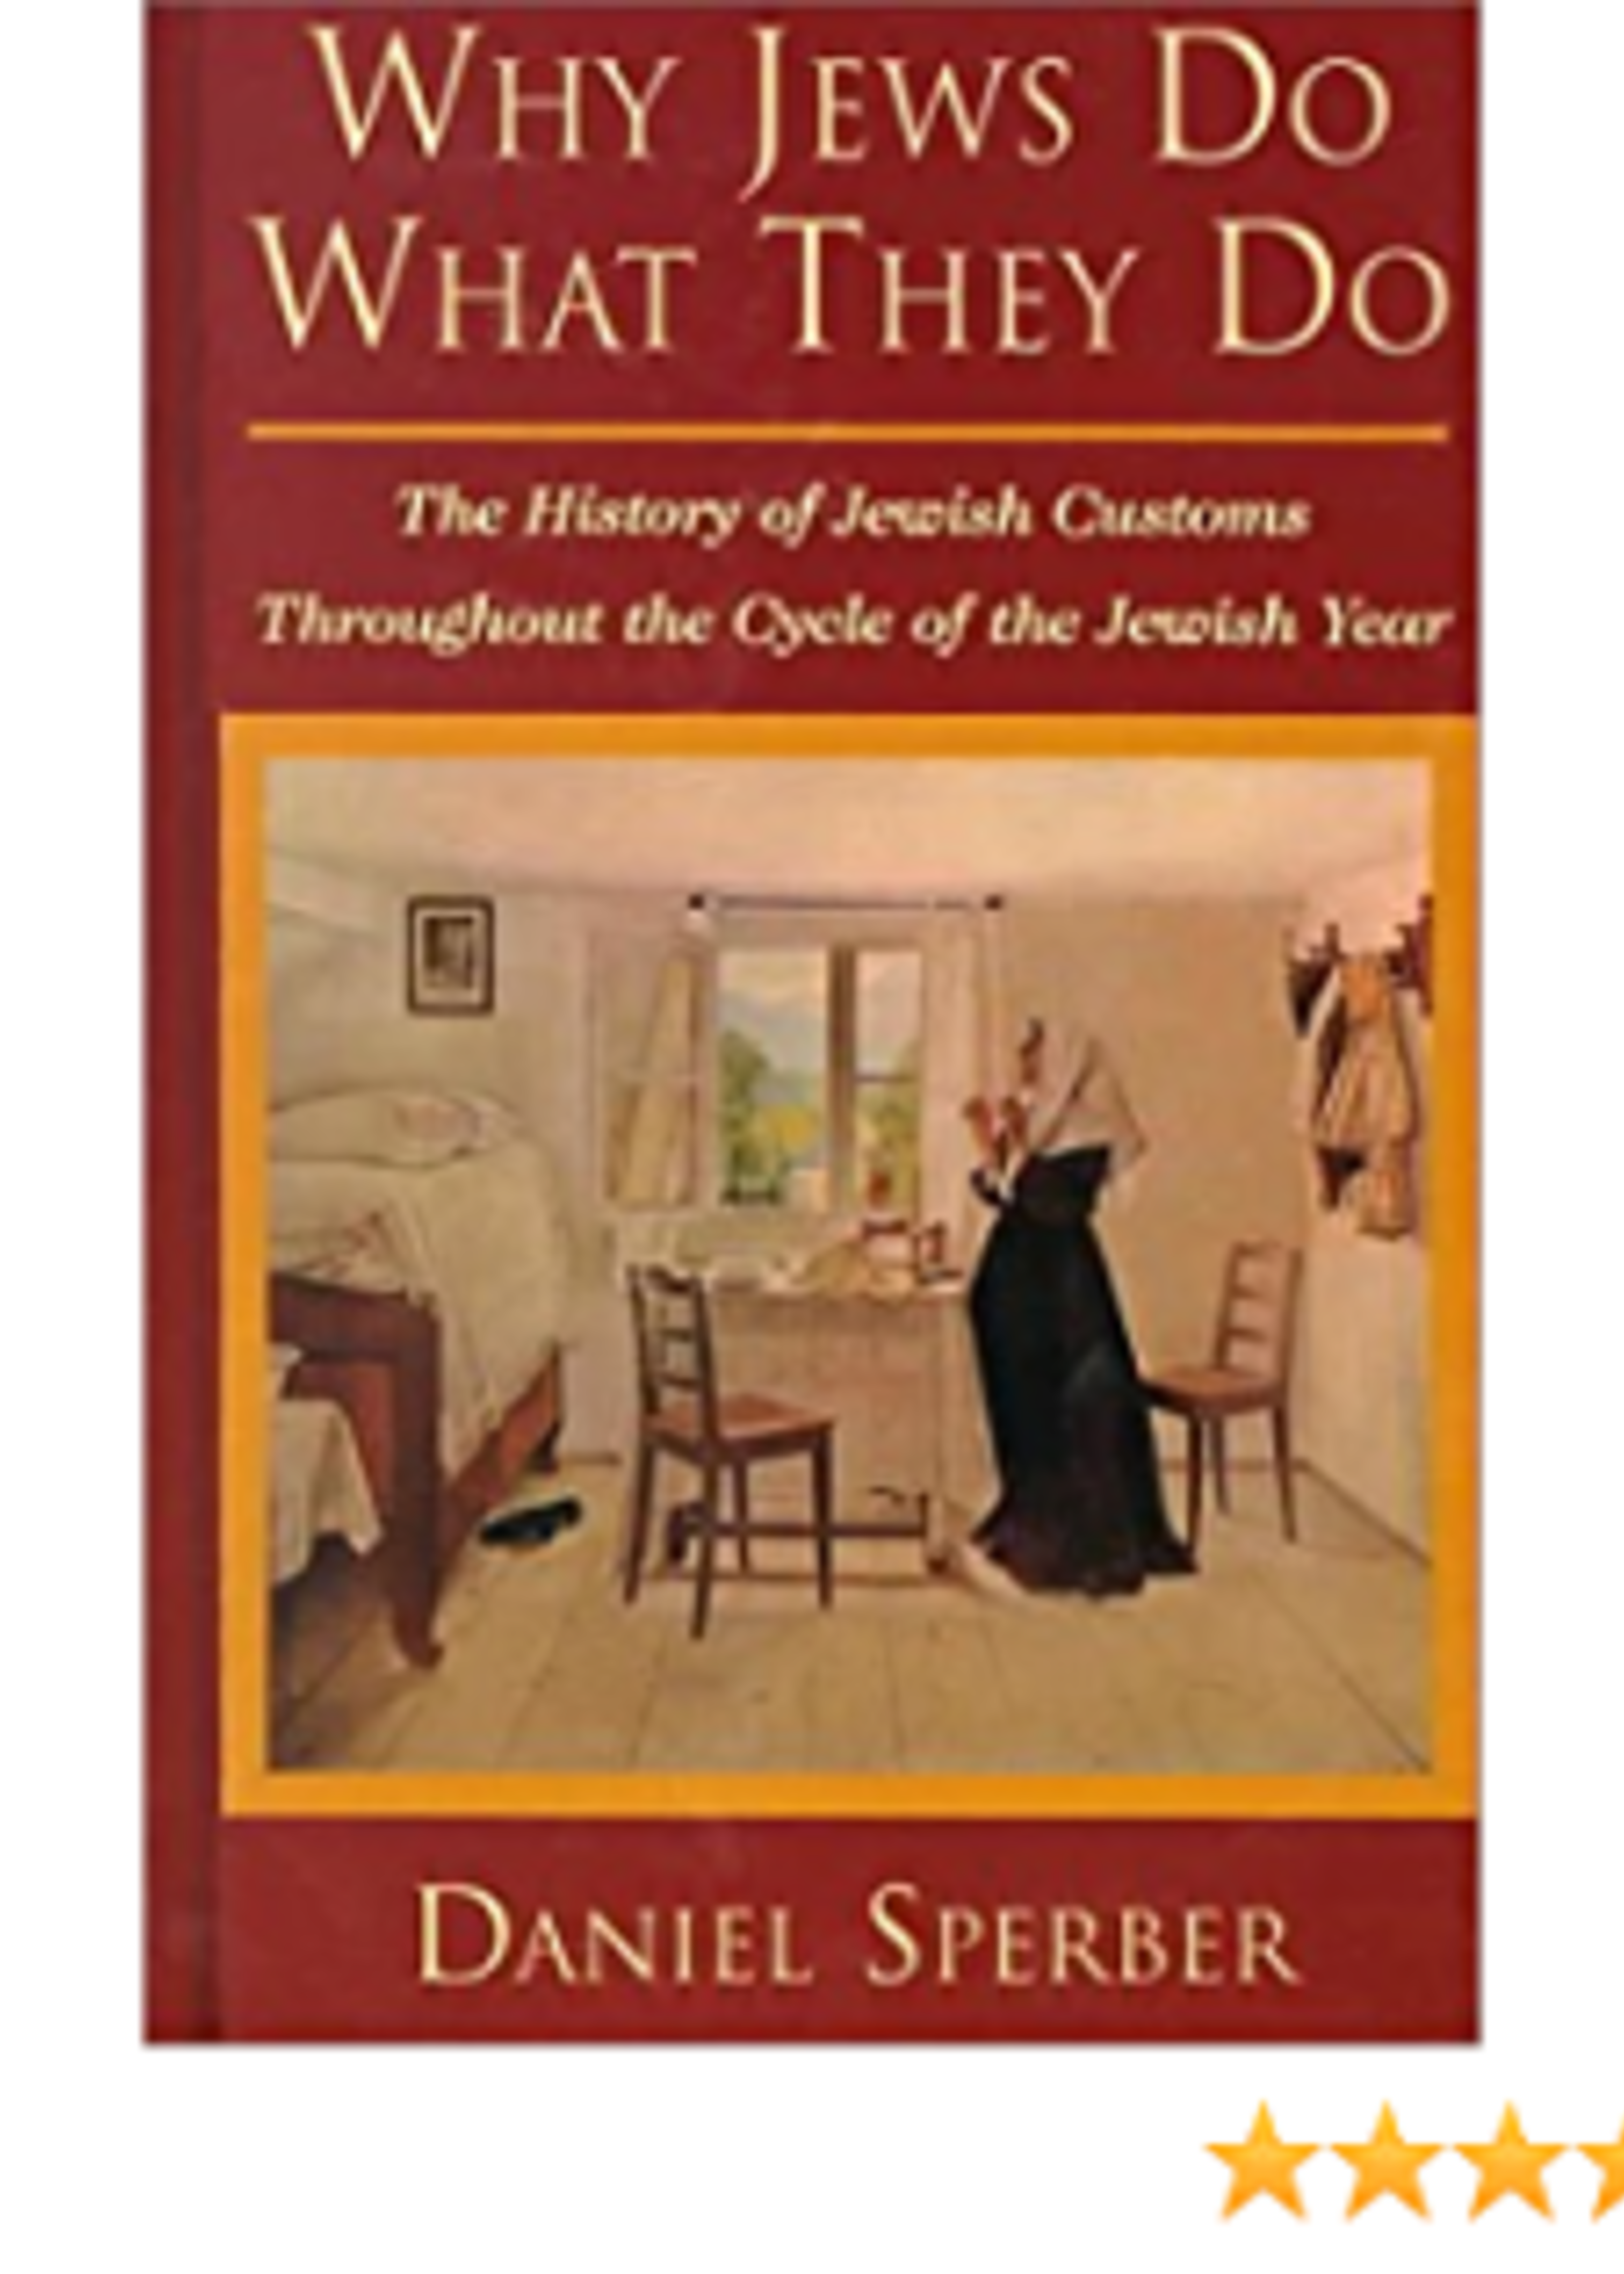 Why Jews do What They Do : Daniel Sperber